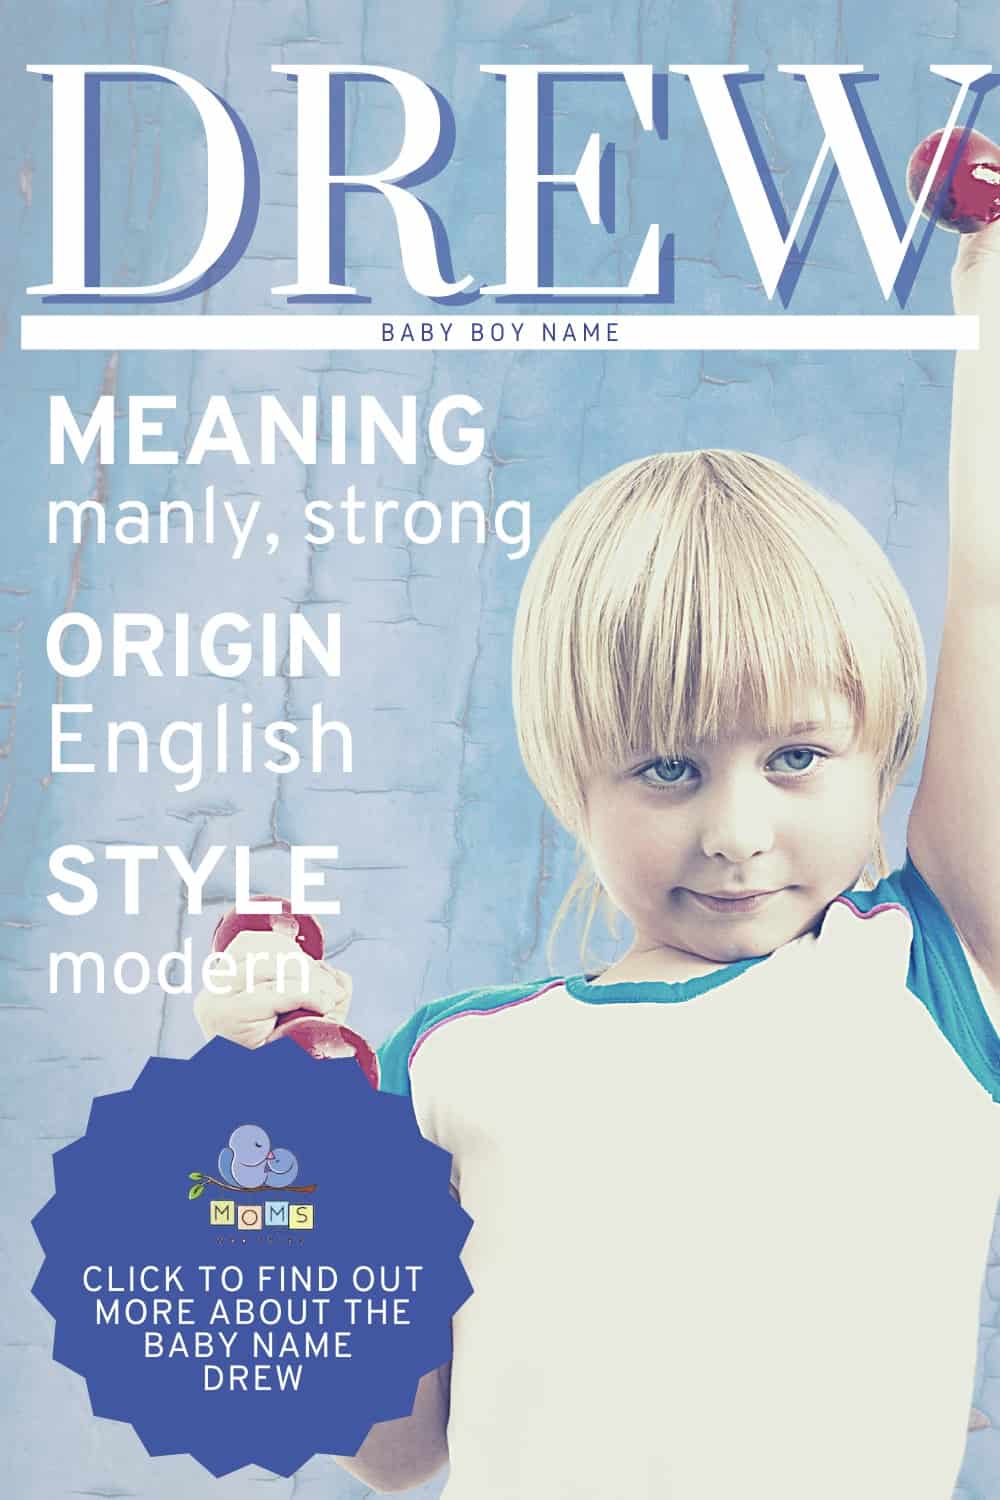 Baby name Drew